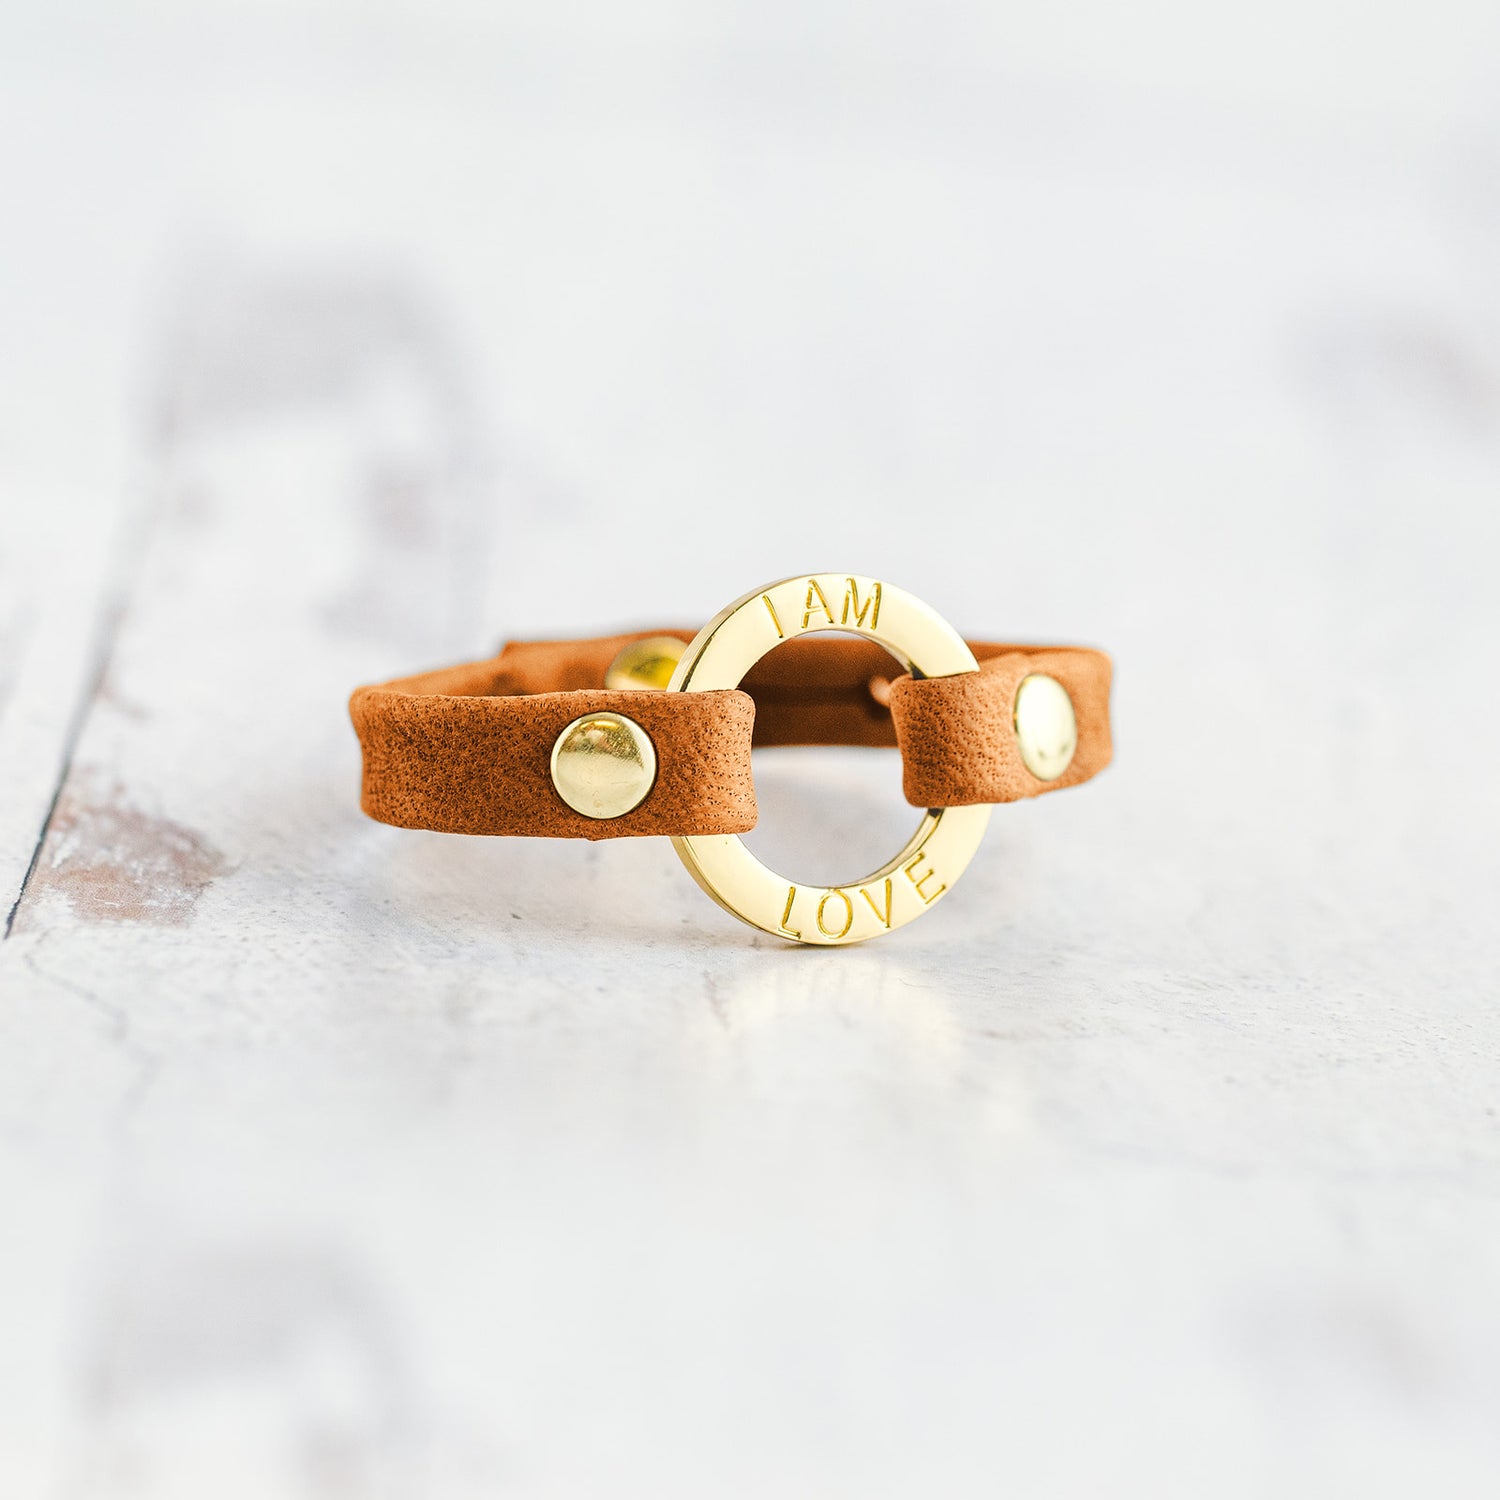 Mantra “I AM LOVE” Bracelet - Gold